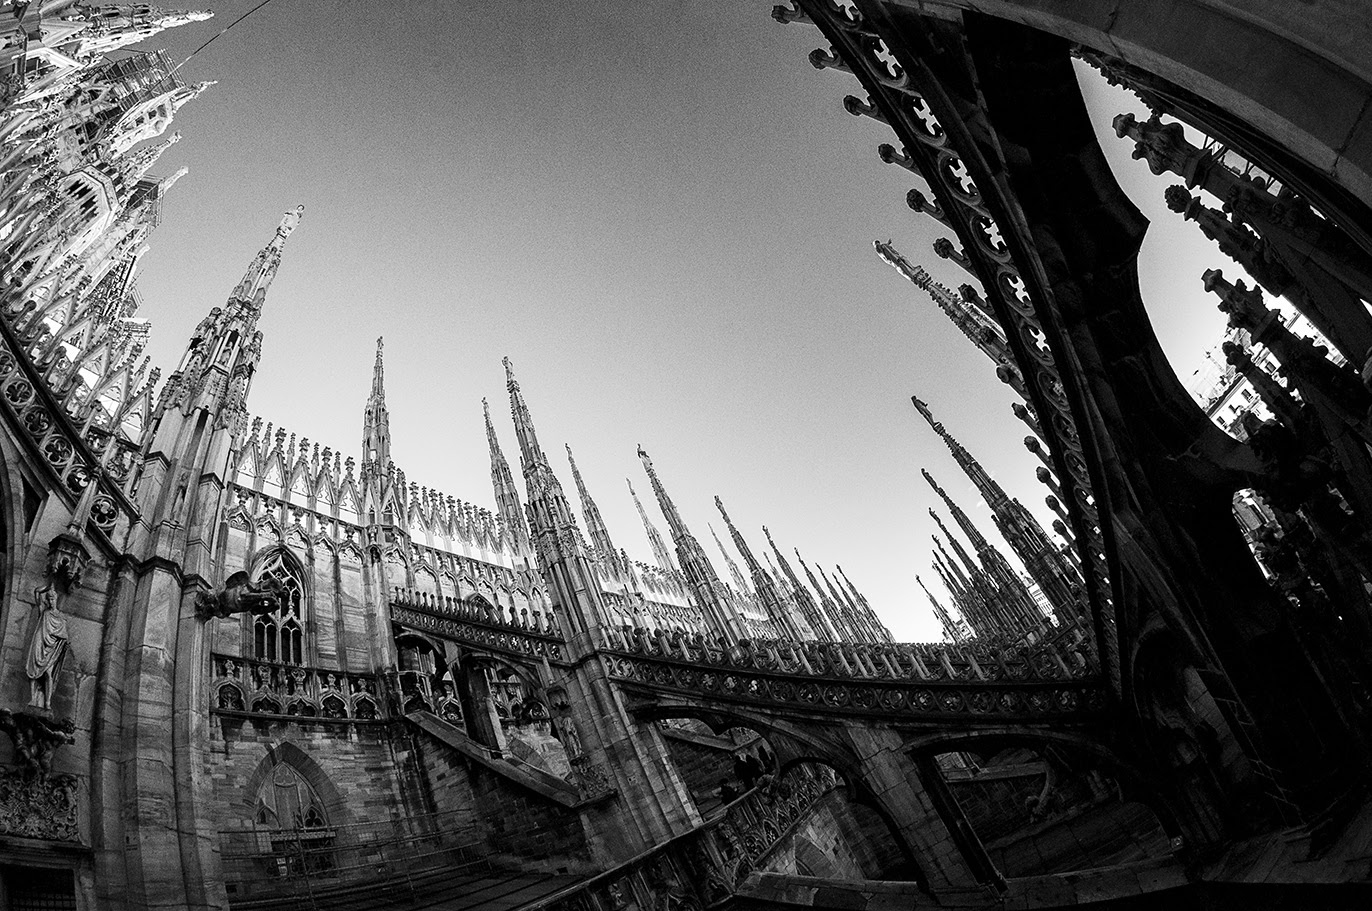 MILUNA-Ewa-Milun-Walczak-Katedra-Duomo-Mediolan-Mediolan-Wlochy-detale-architektoniczne-gotyk-marmurowa-katedra-jedna-z-najbardziej-znanych-budowli-we-Włoszech-i-w-Europie-9